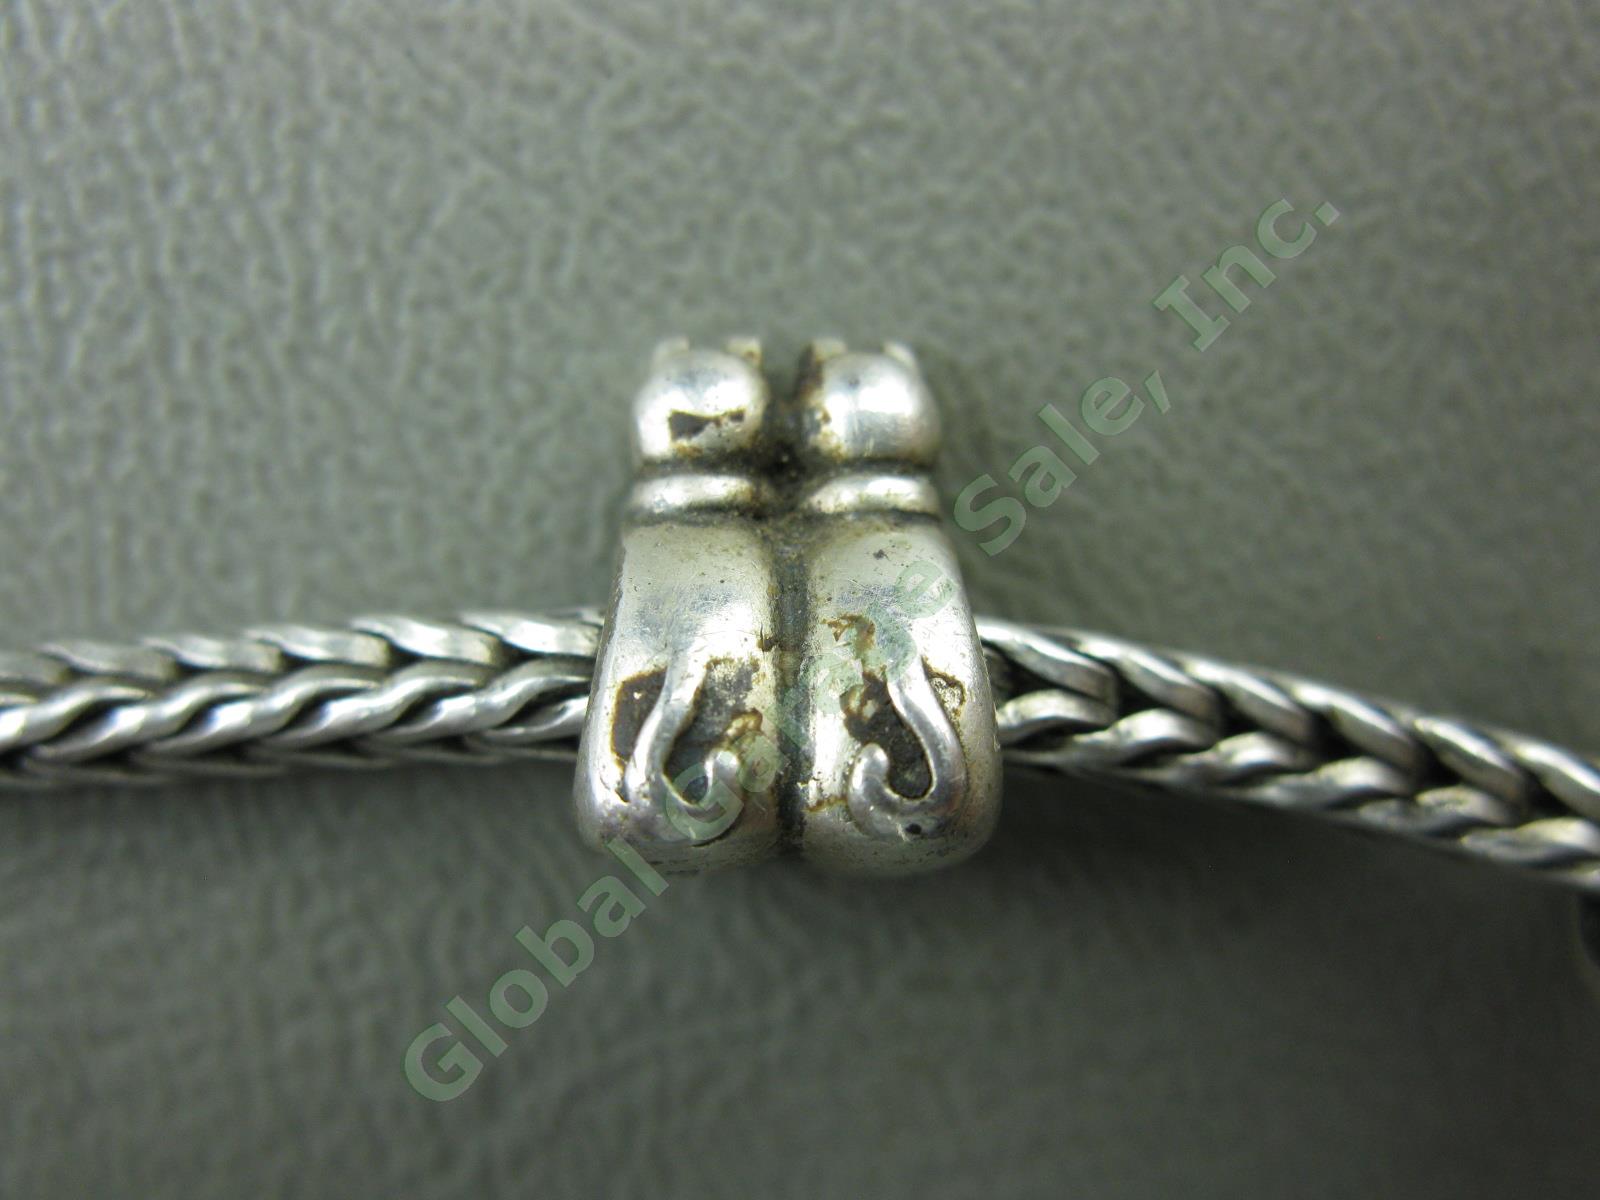 Trollbeads LAA 925 S Sterling Silver Bracelet Swan Lock Chamilia Charm Beads Lot 8